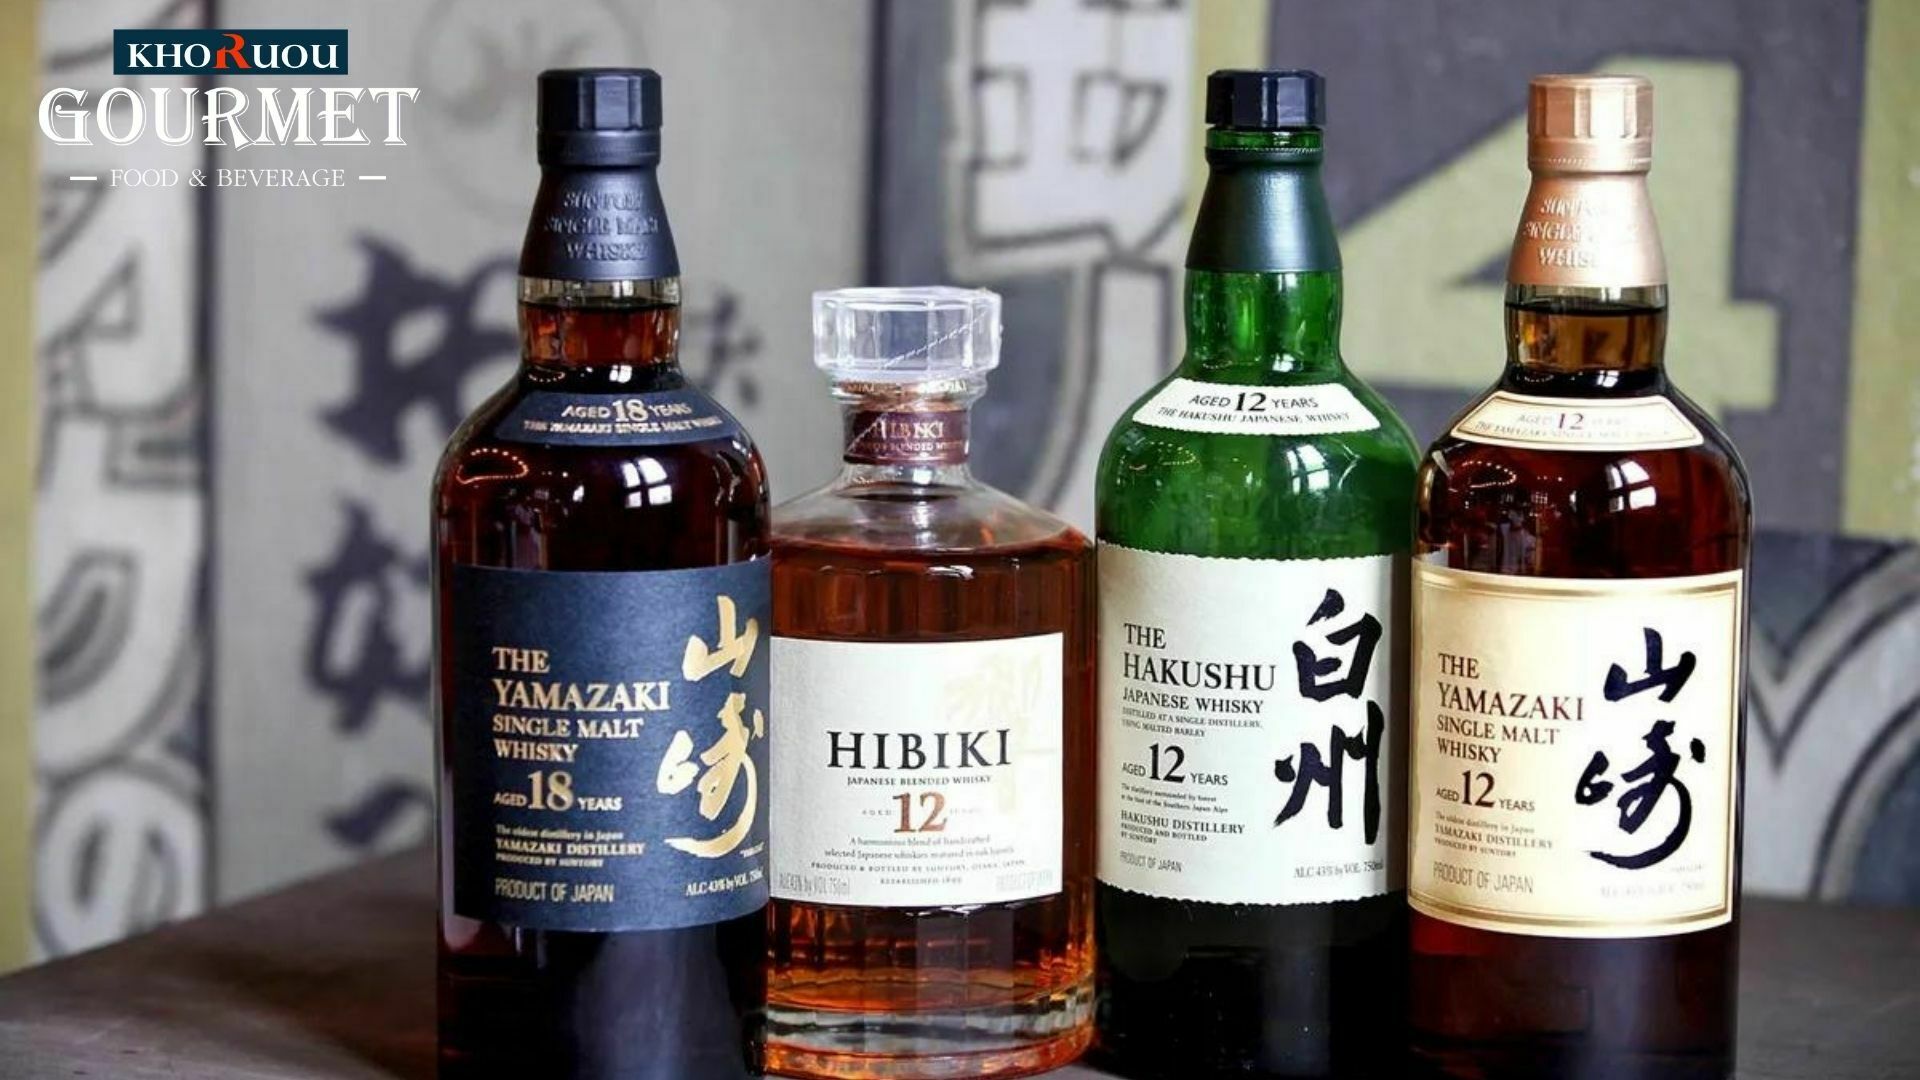 Rượu Whisky Nhật có giá bao nhiêu, phù hợp với loại đối tượng nào? Lướt ngang qua bảng giá của Whisky có thể thấy nó phù hợp vớ đối tượng khách hàng từ tầm trung trở lên.